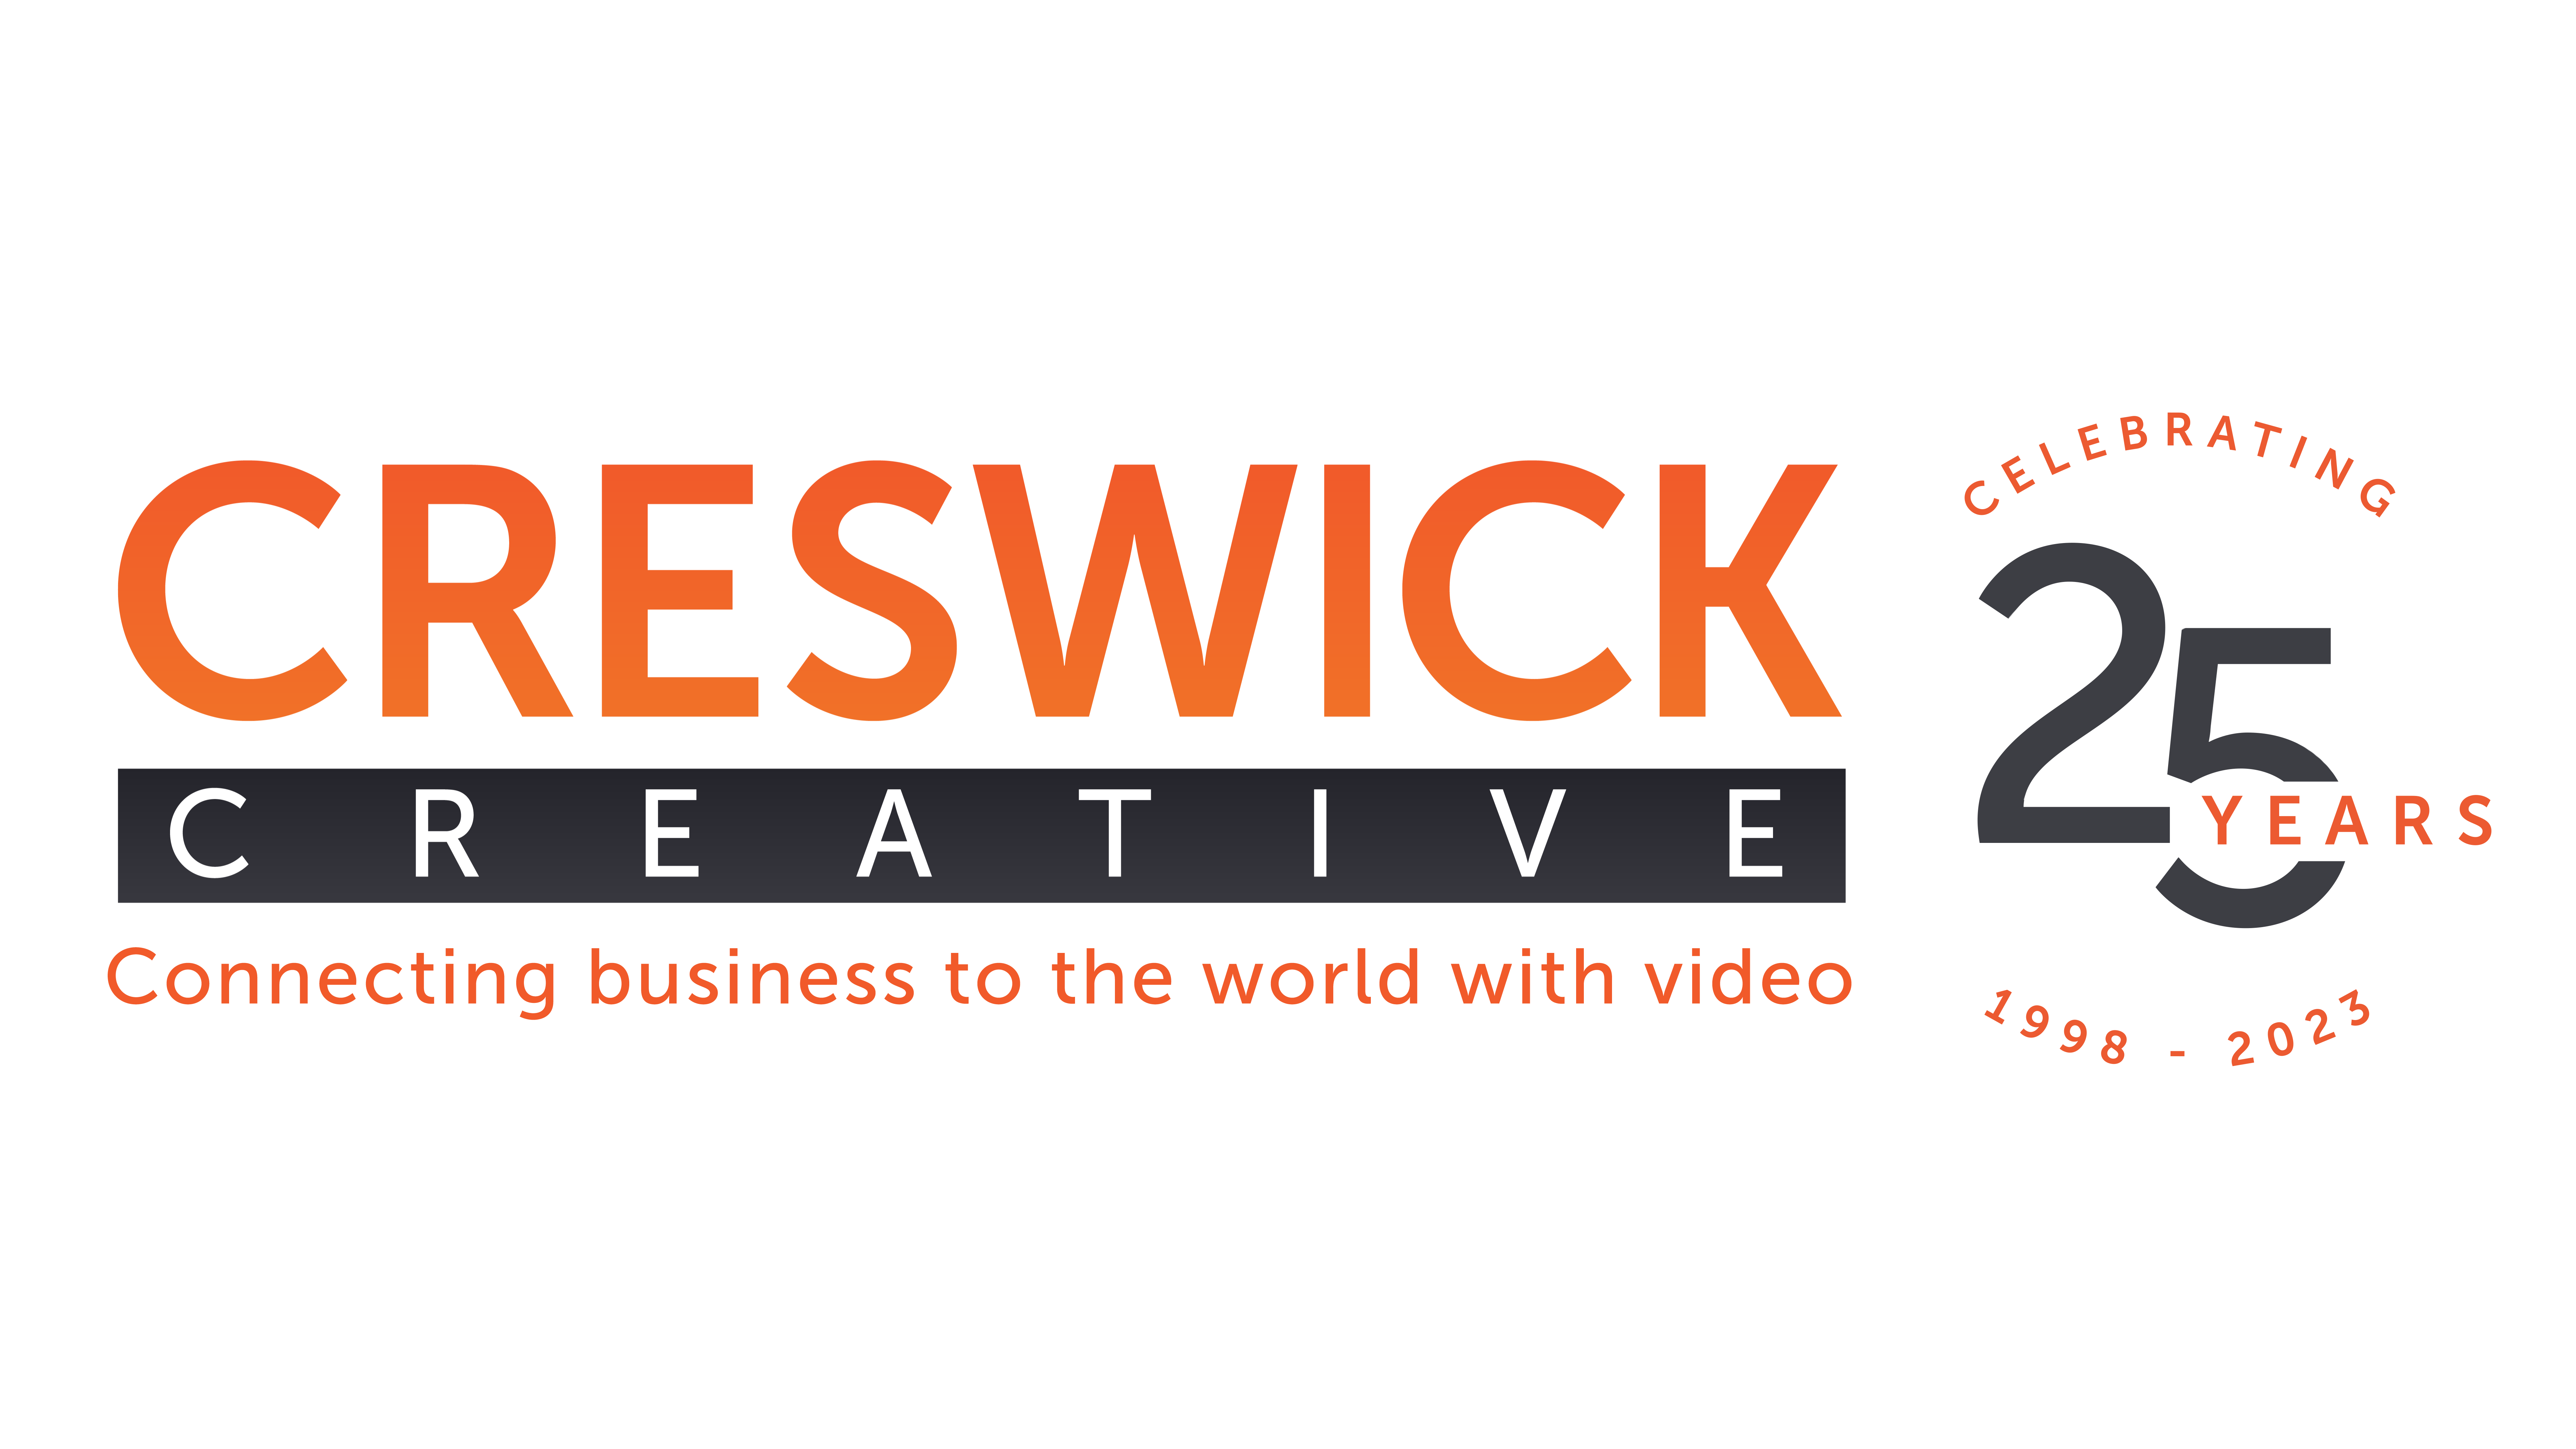 Creswick Creative